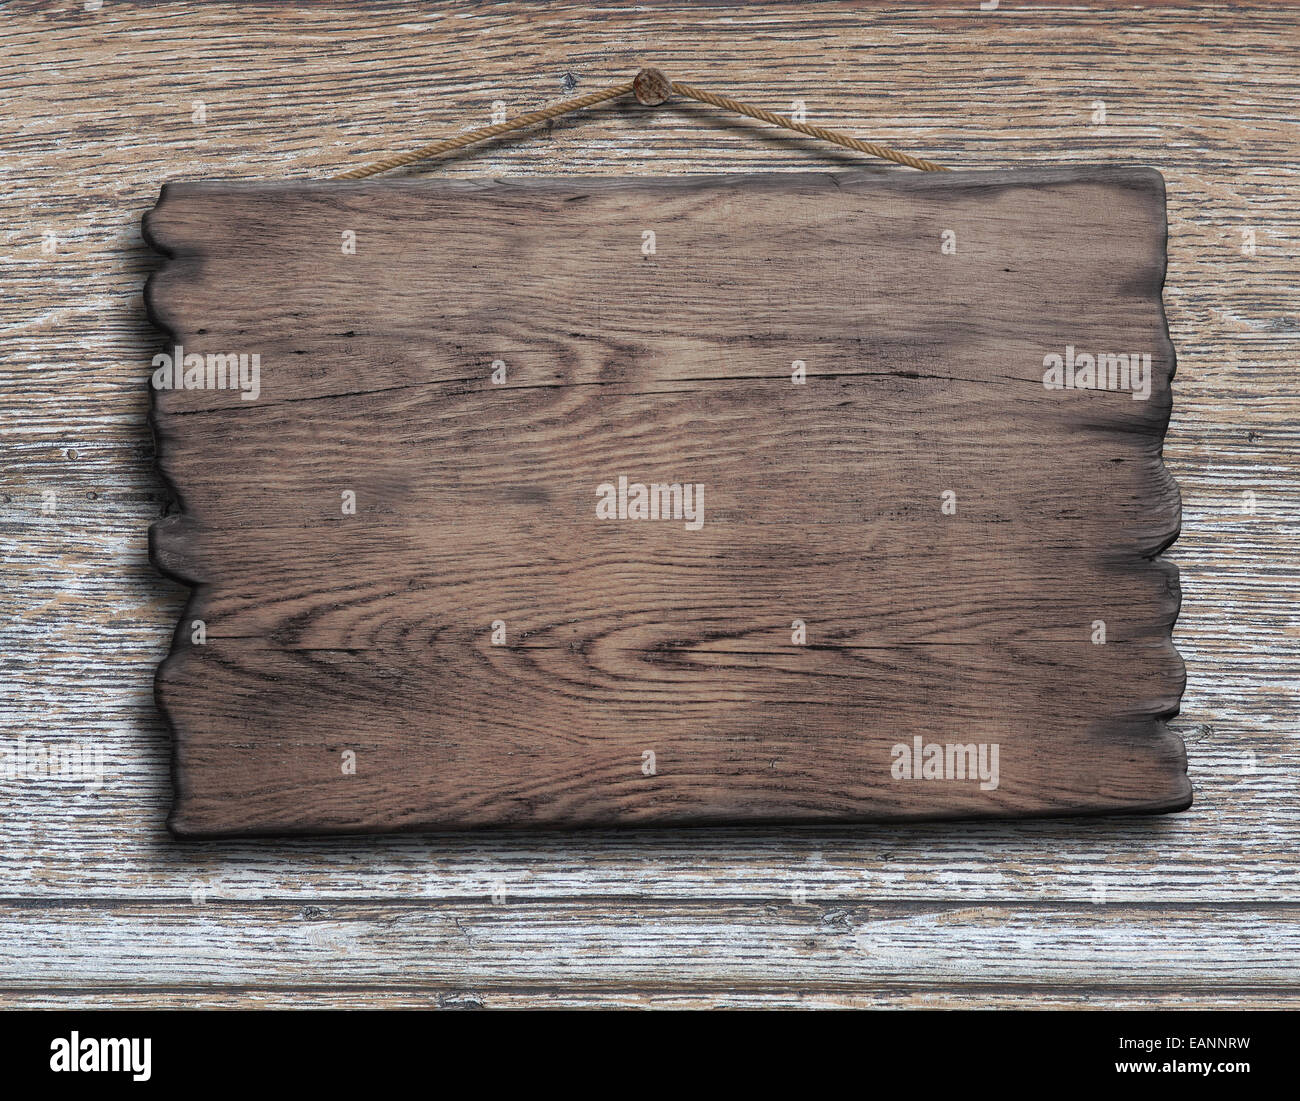 Tablones de madera vieja o un plato colgado en la pared de tablones de madera Foto de stock